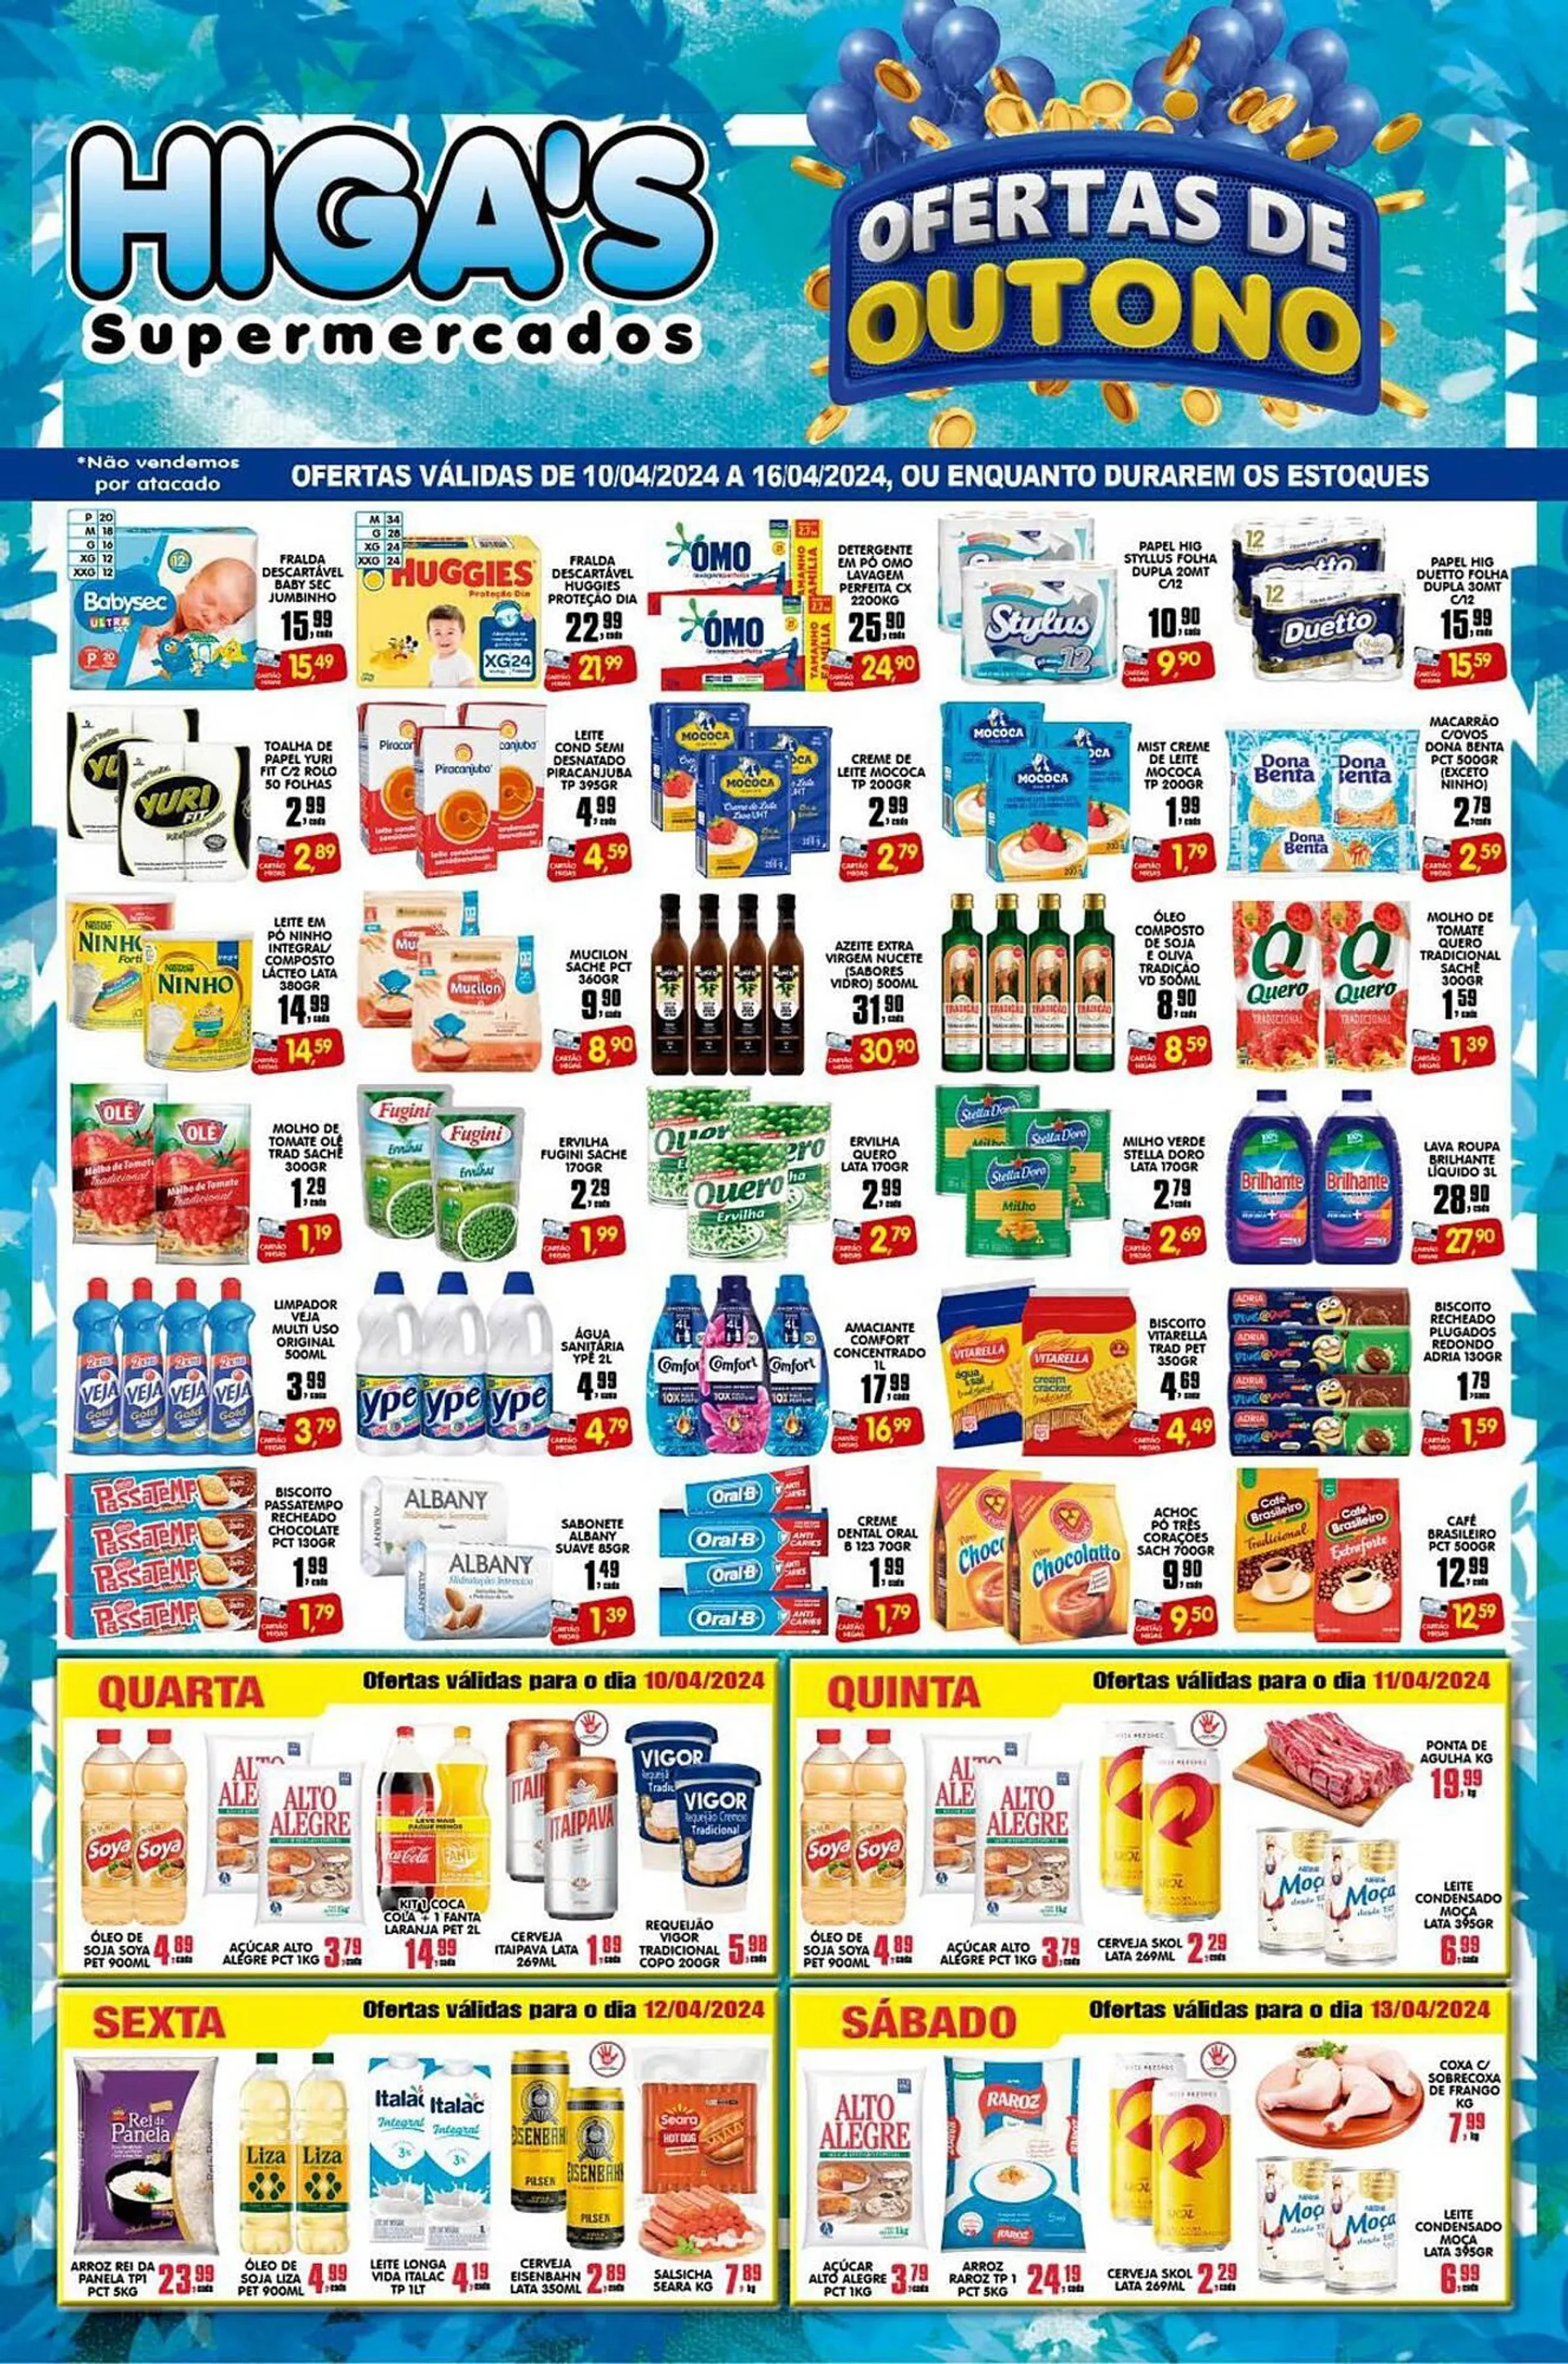 Encarte de Catálogo Higa's Supermercado 9 de abril até 16 de abril 2024 - Pagina 1